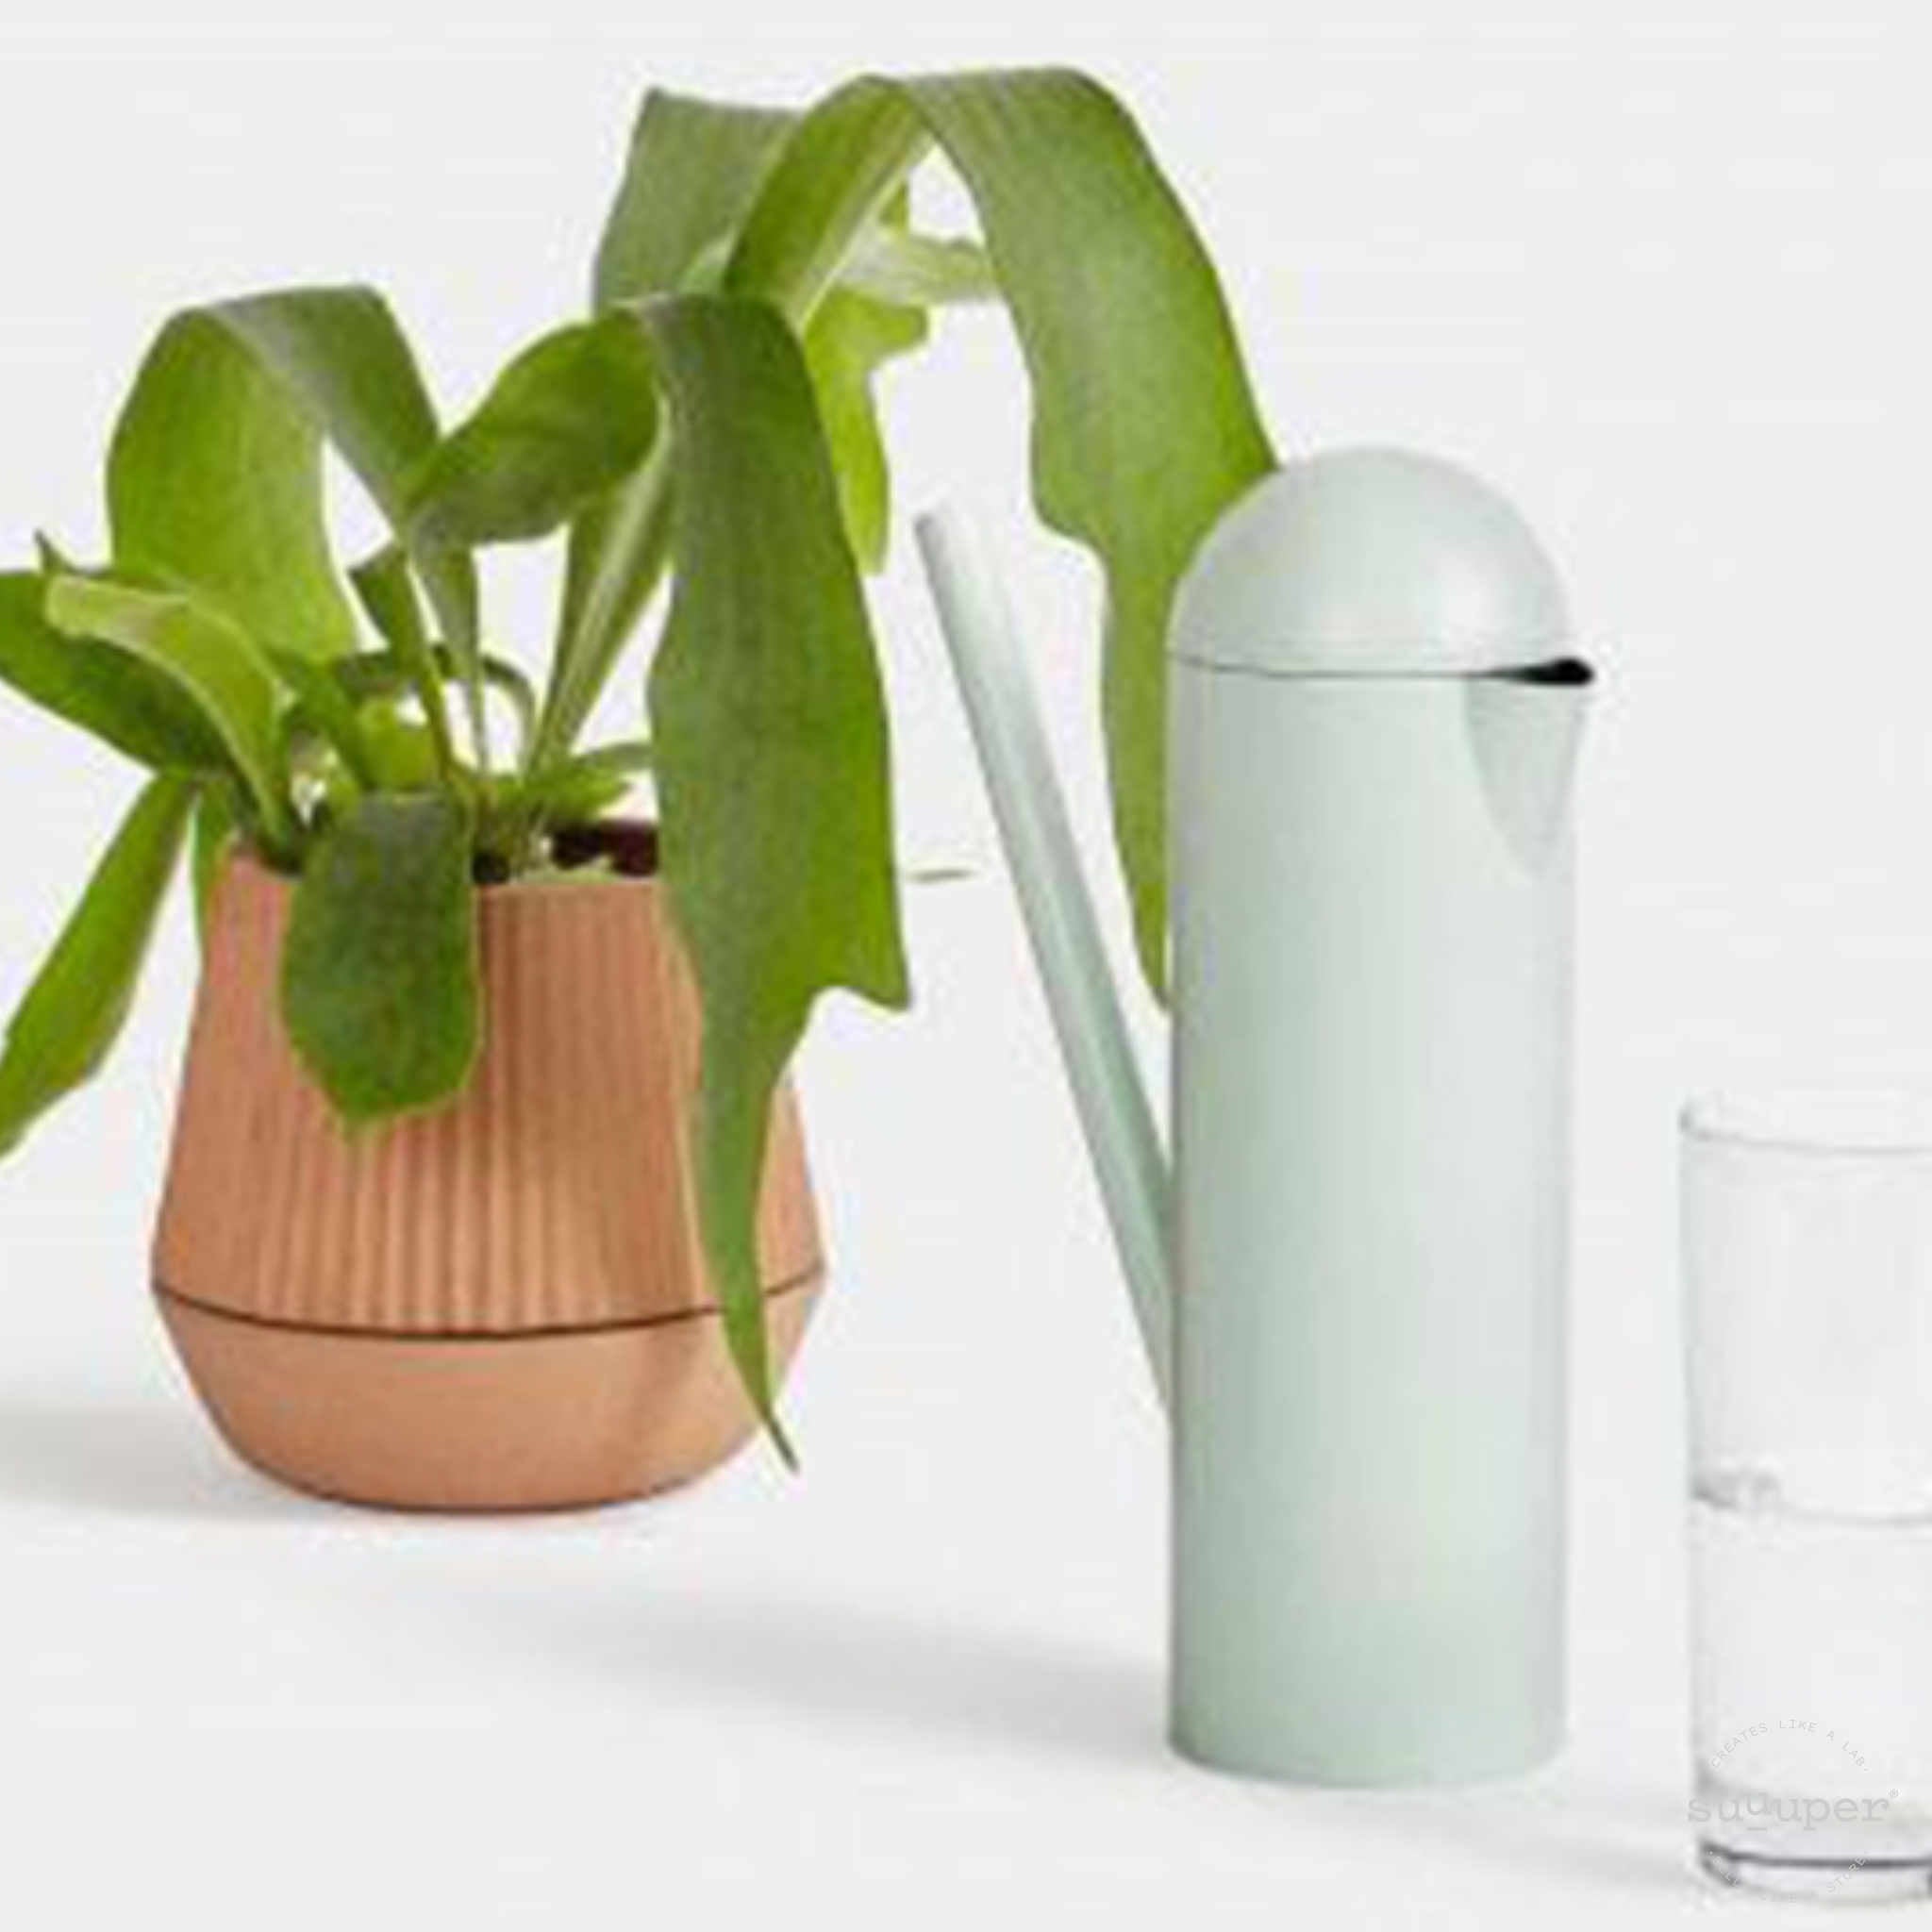 BOTTLE VS WATERING CAN  - Design by Earnest Studio & Emilie Pallard